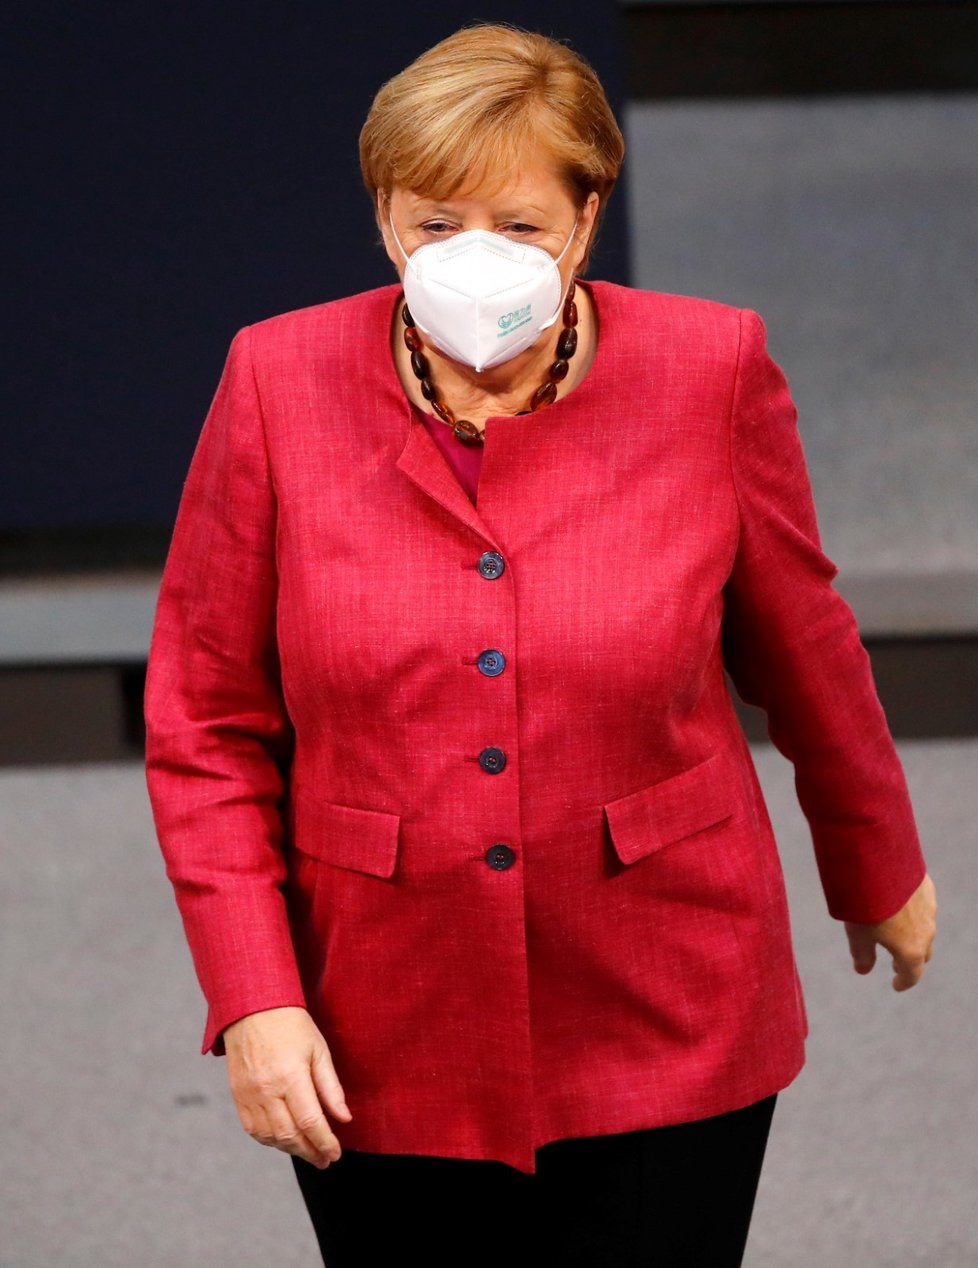 Německá kancléřka Angela Merkelová ve Spolkovém sněmu (29. 10. 2020)